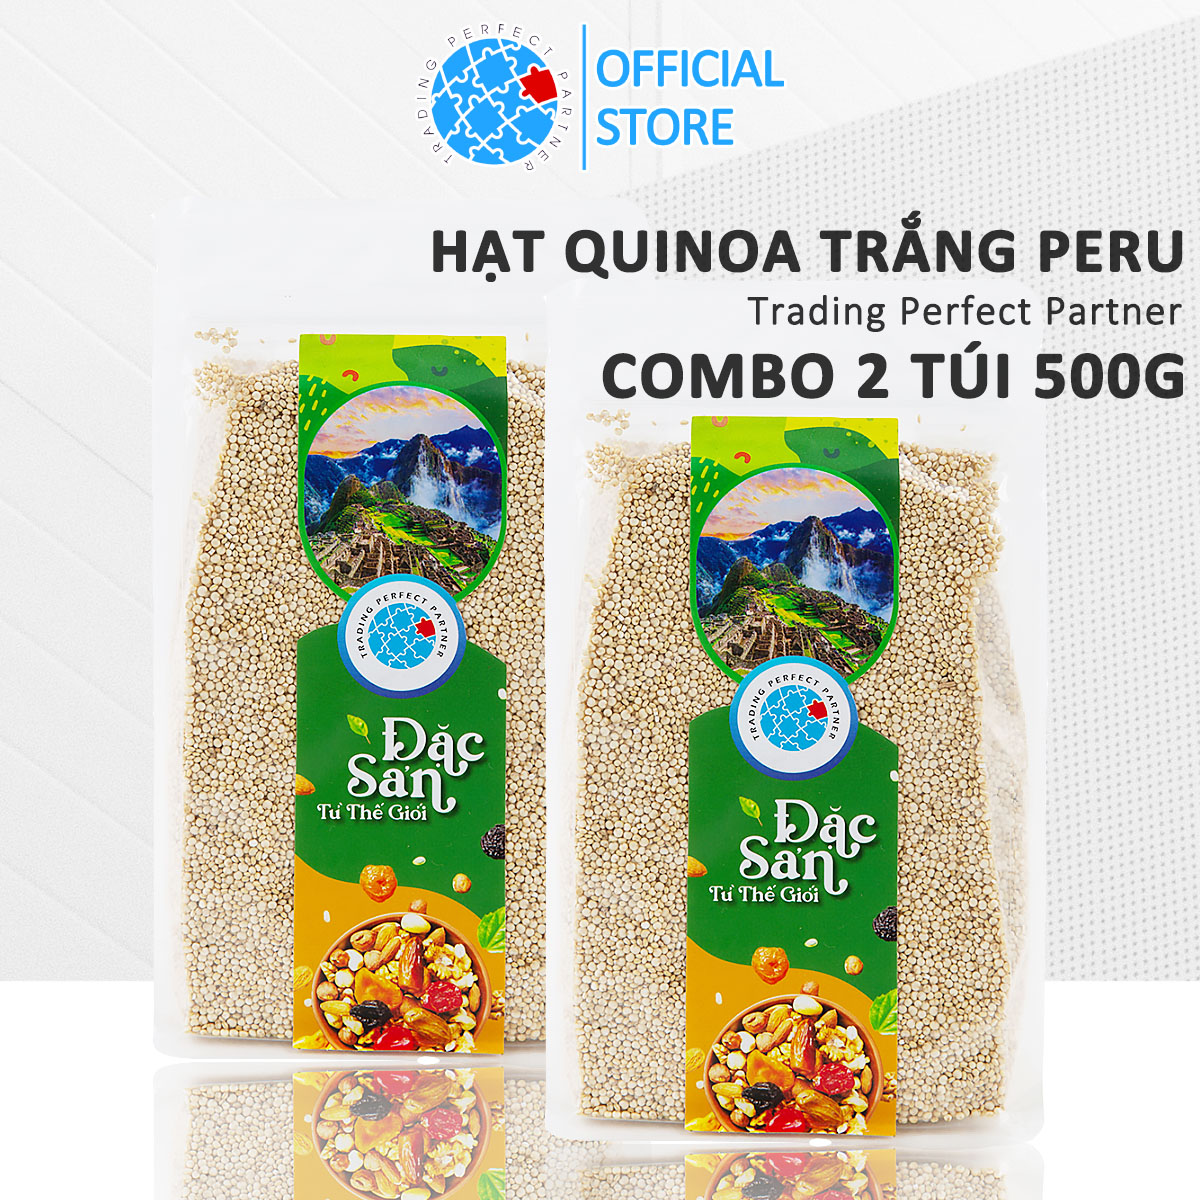 Combo 2 Túi Hạt Quinoa Trắng (Diêm mạch trắng) Hữu Cơ Trading Perfect Partner Túi 500g Nhập Khẩu Từ Peru